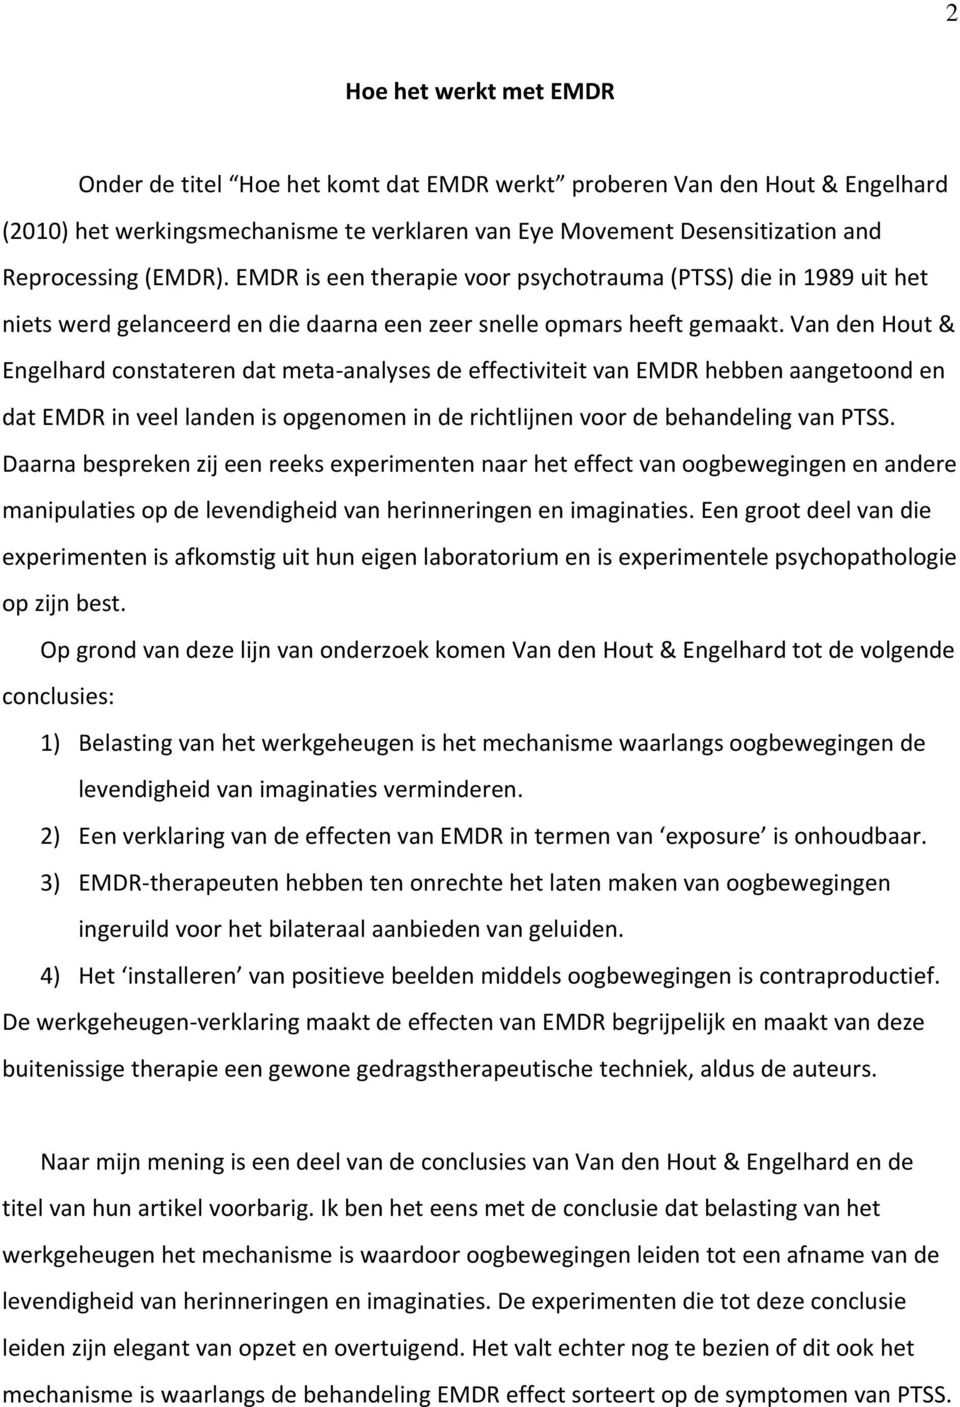 Van den Hout & Engelhard constateren dat meta analyses de effectiviteit van EMDR hebben aangetoond en dat EMDR in veel landen is opgenomen in de richtlijnen voor de behandeling van PTSS.